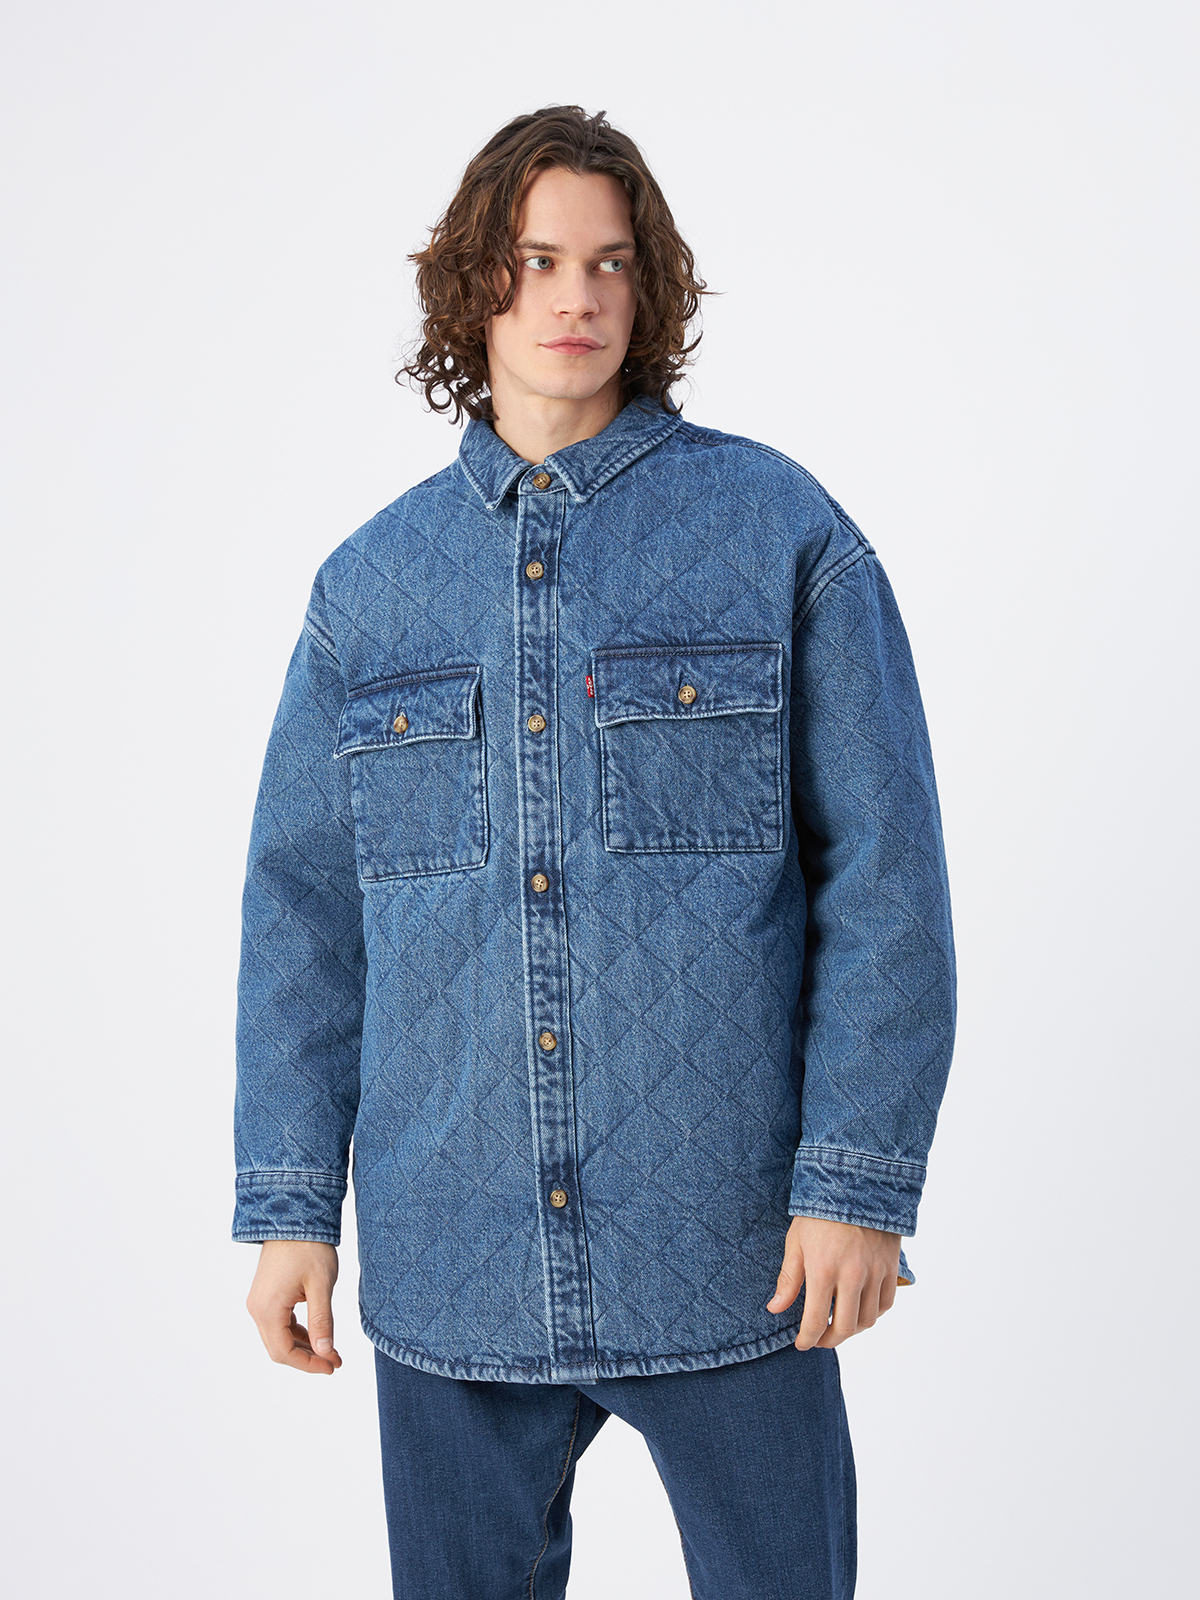 Джинсовая куртка мужская Levi's A0682-0001 синяя L